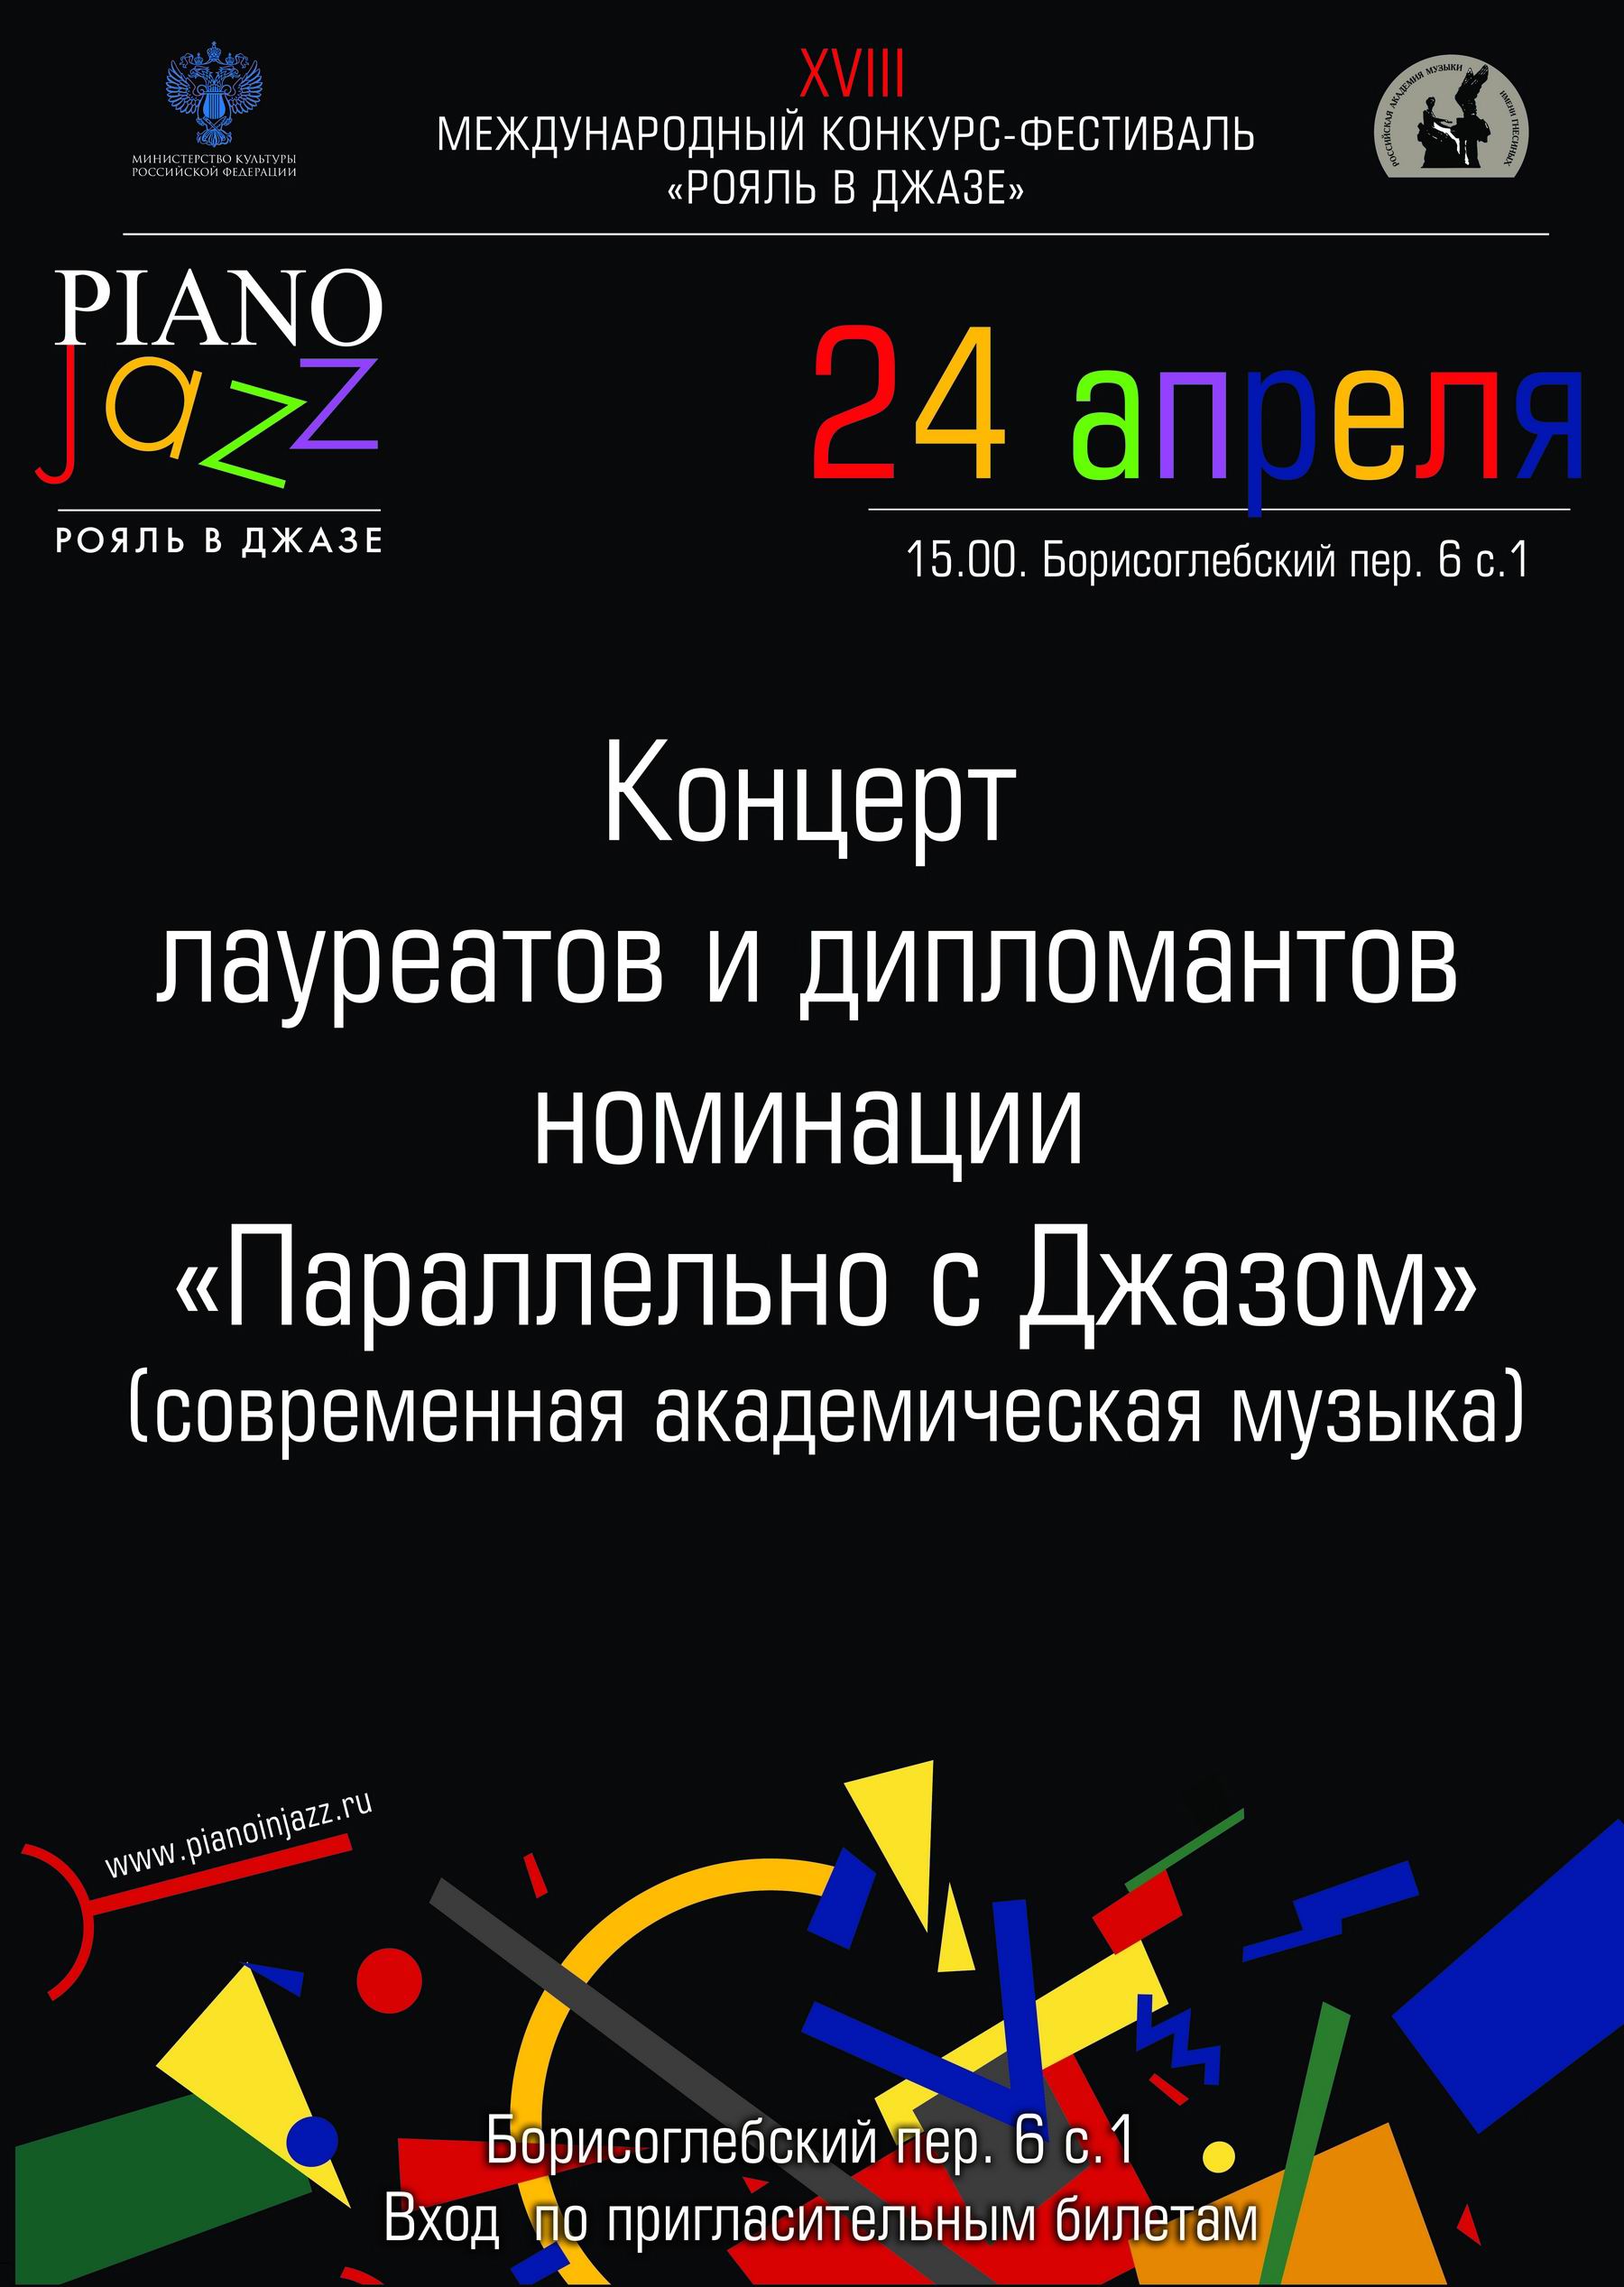 Иллюстрация: Гала-концерт победителей XVIII Международного музыкального конкурса «Рояль в джазе» в номинации «Параллельно с джазом»